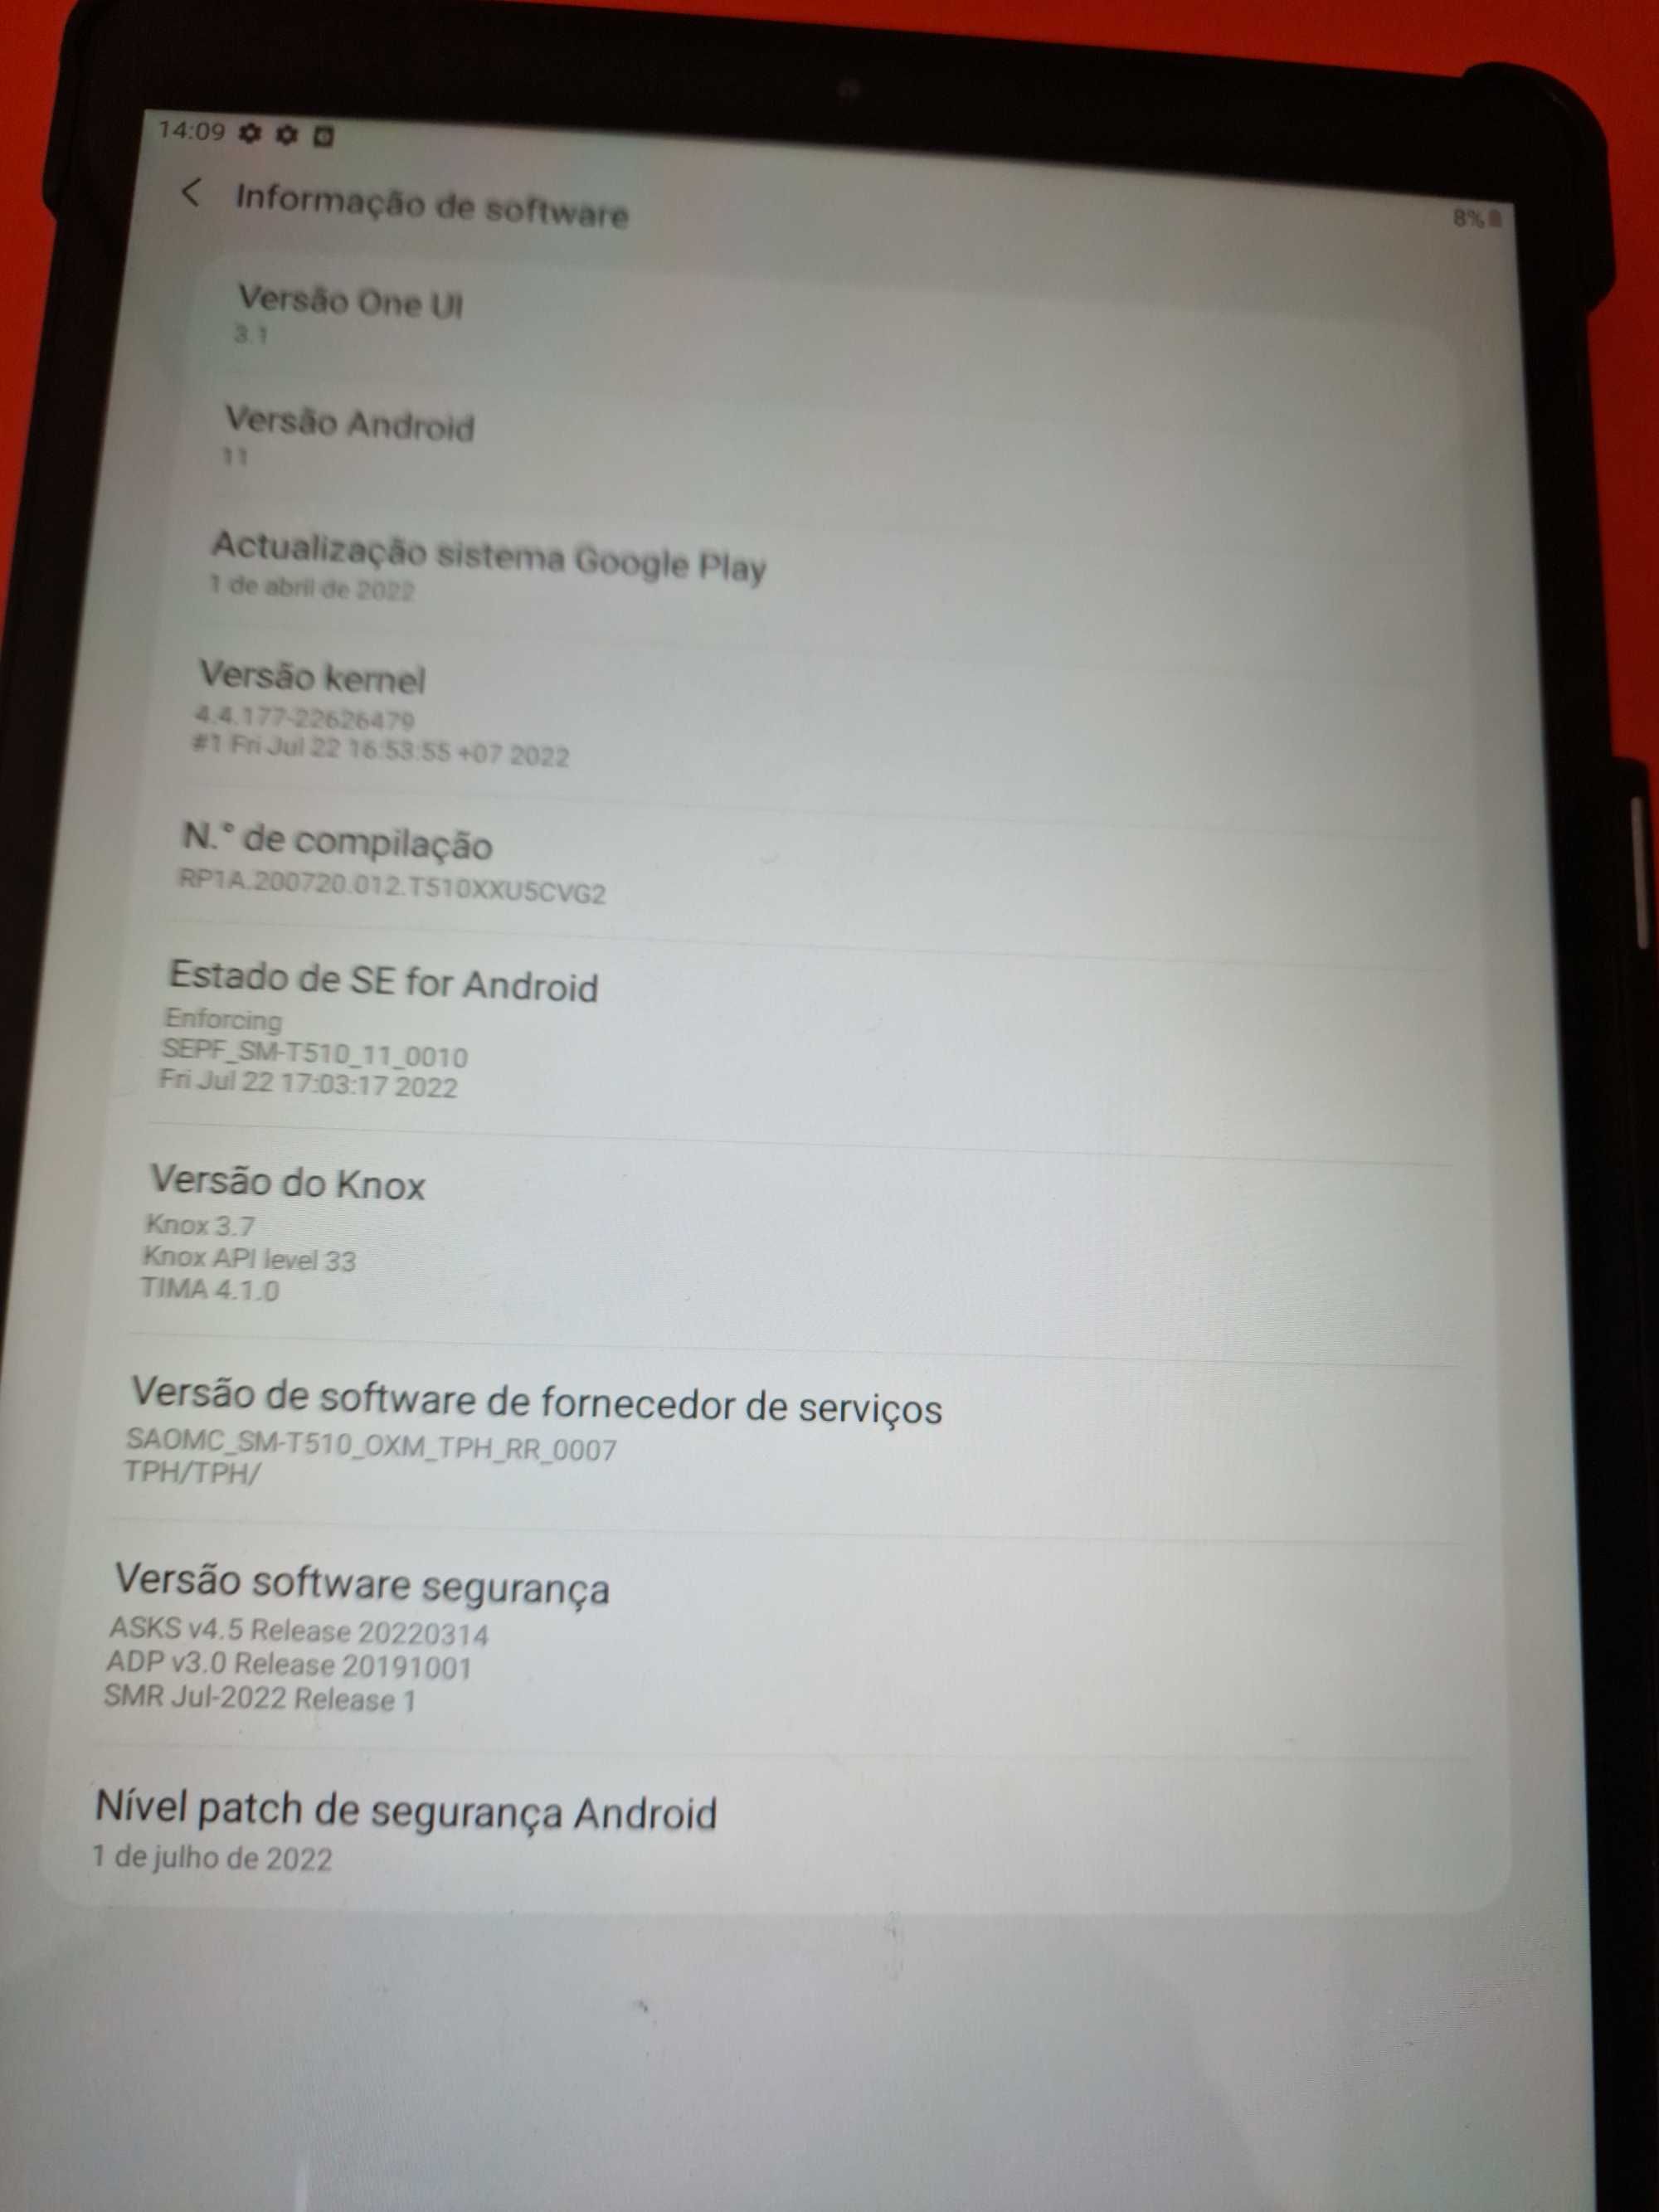 Tablet Samsung T510 Galaxy Tab A (oferta da capa)